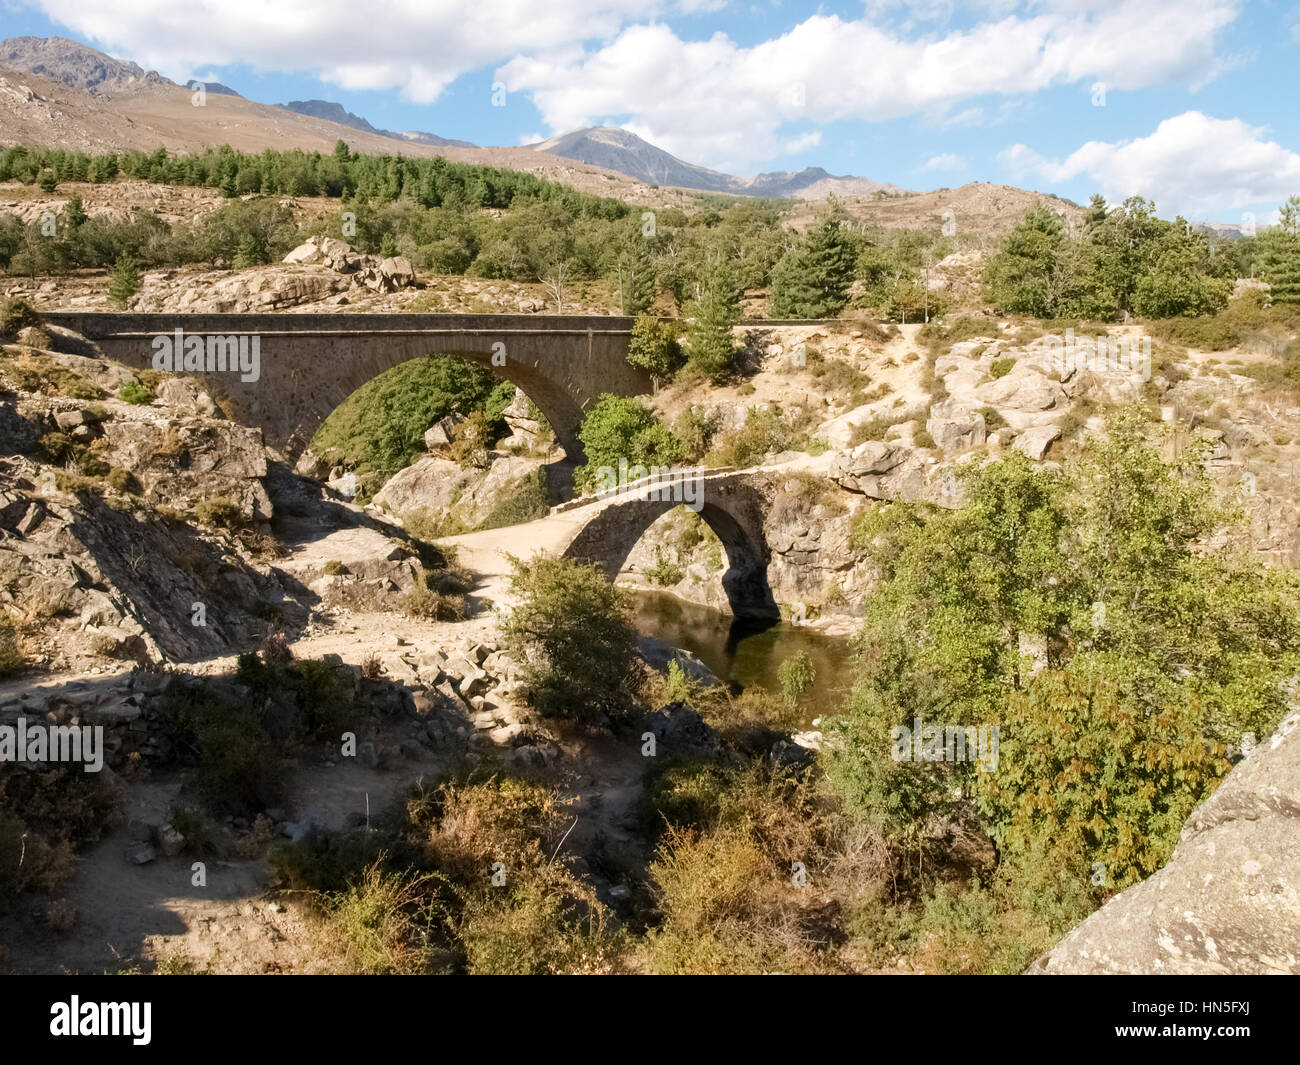 Albertacce Corse, France : Albertacce, vieux pont de pierre Banque D'Images